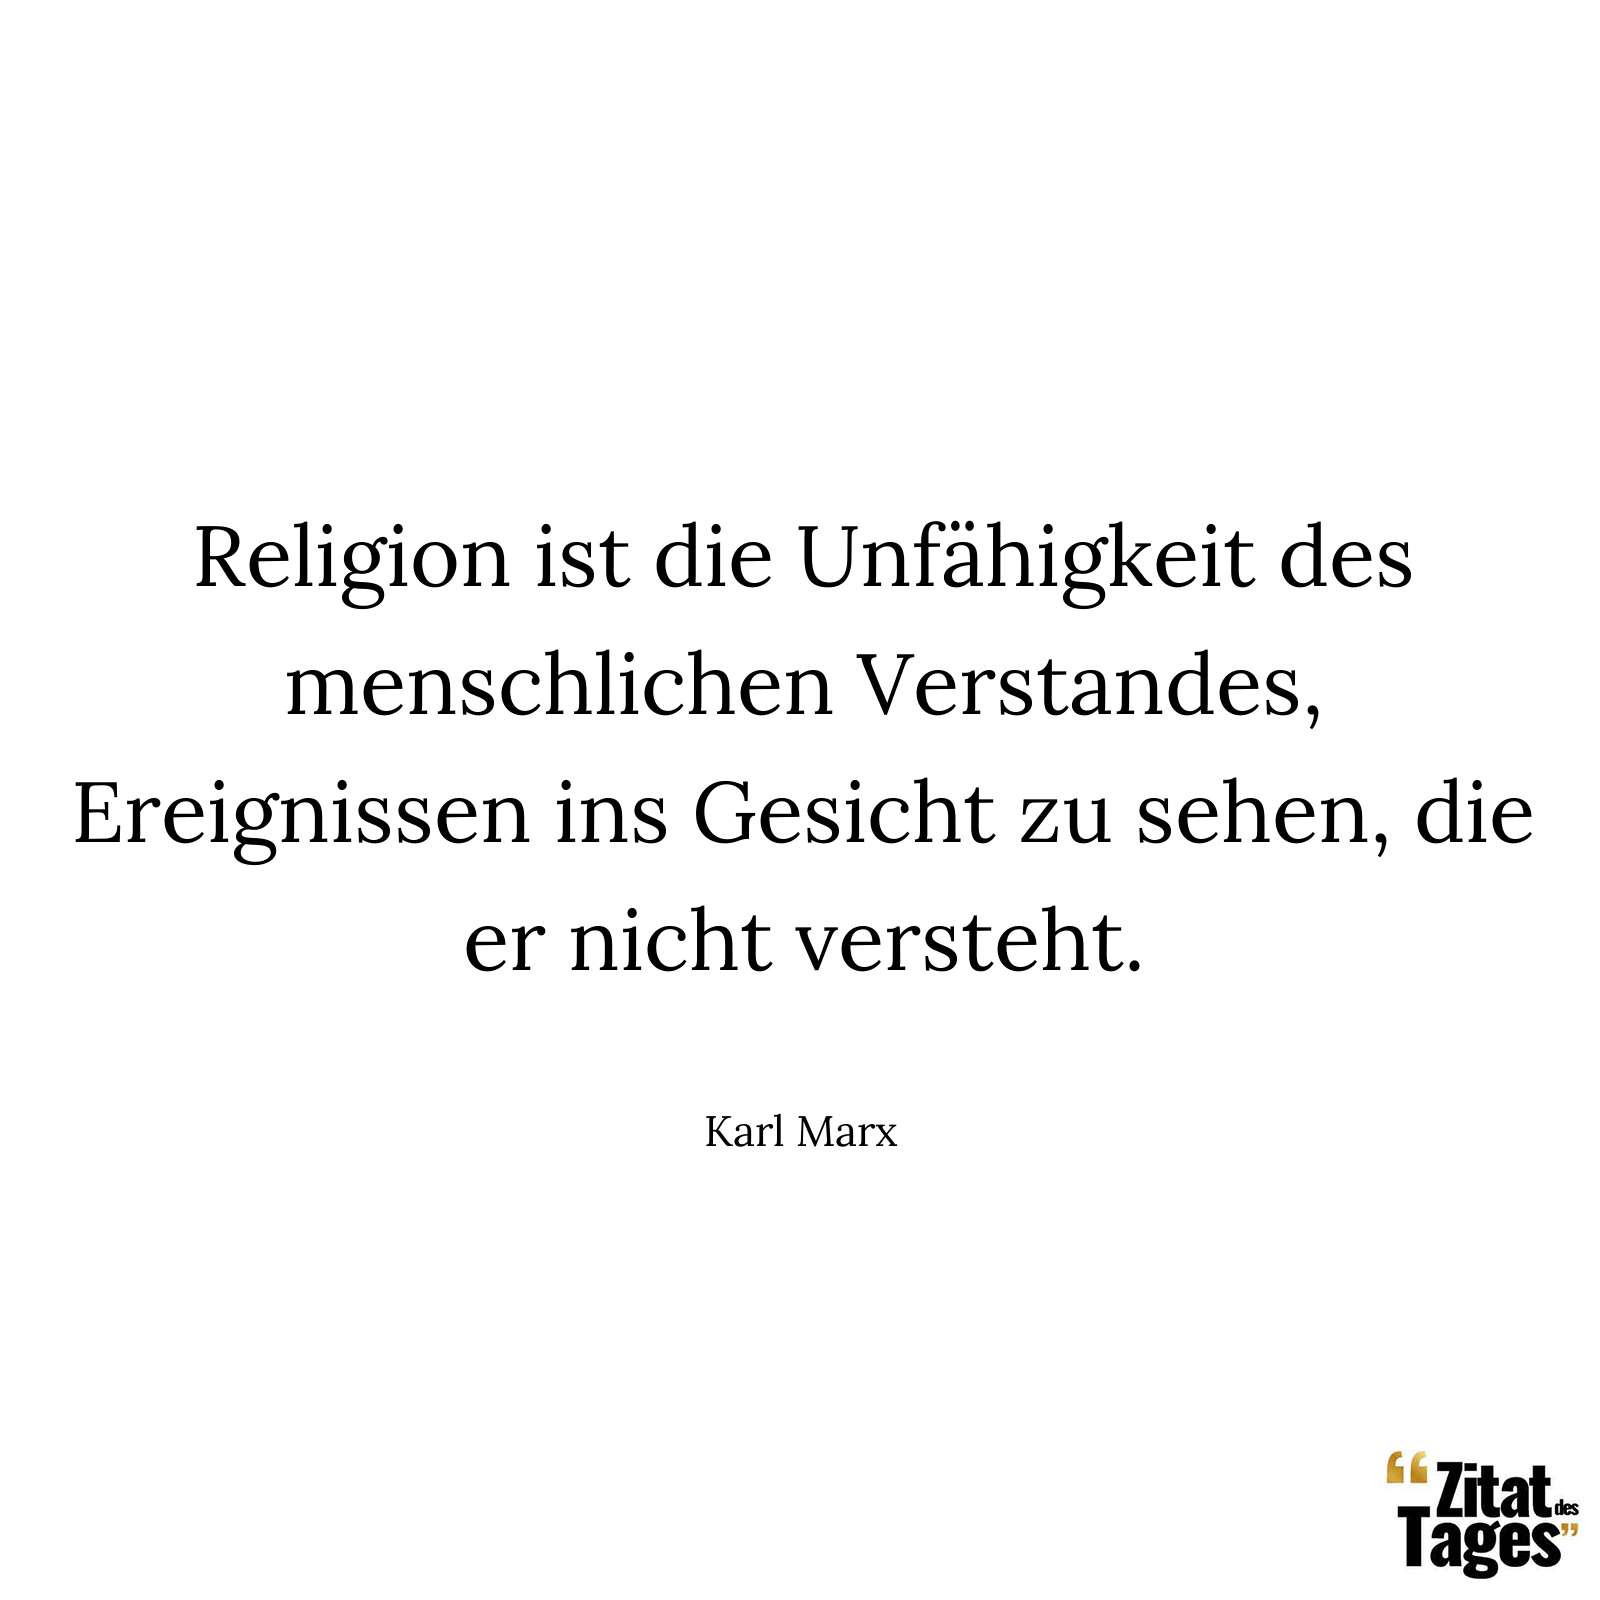 Religion ist die Unfähigkeit des menschlichen Verstandes, Ereignissen ins Gesicht zu sehen, die er nicht versteht. - Karl Marx